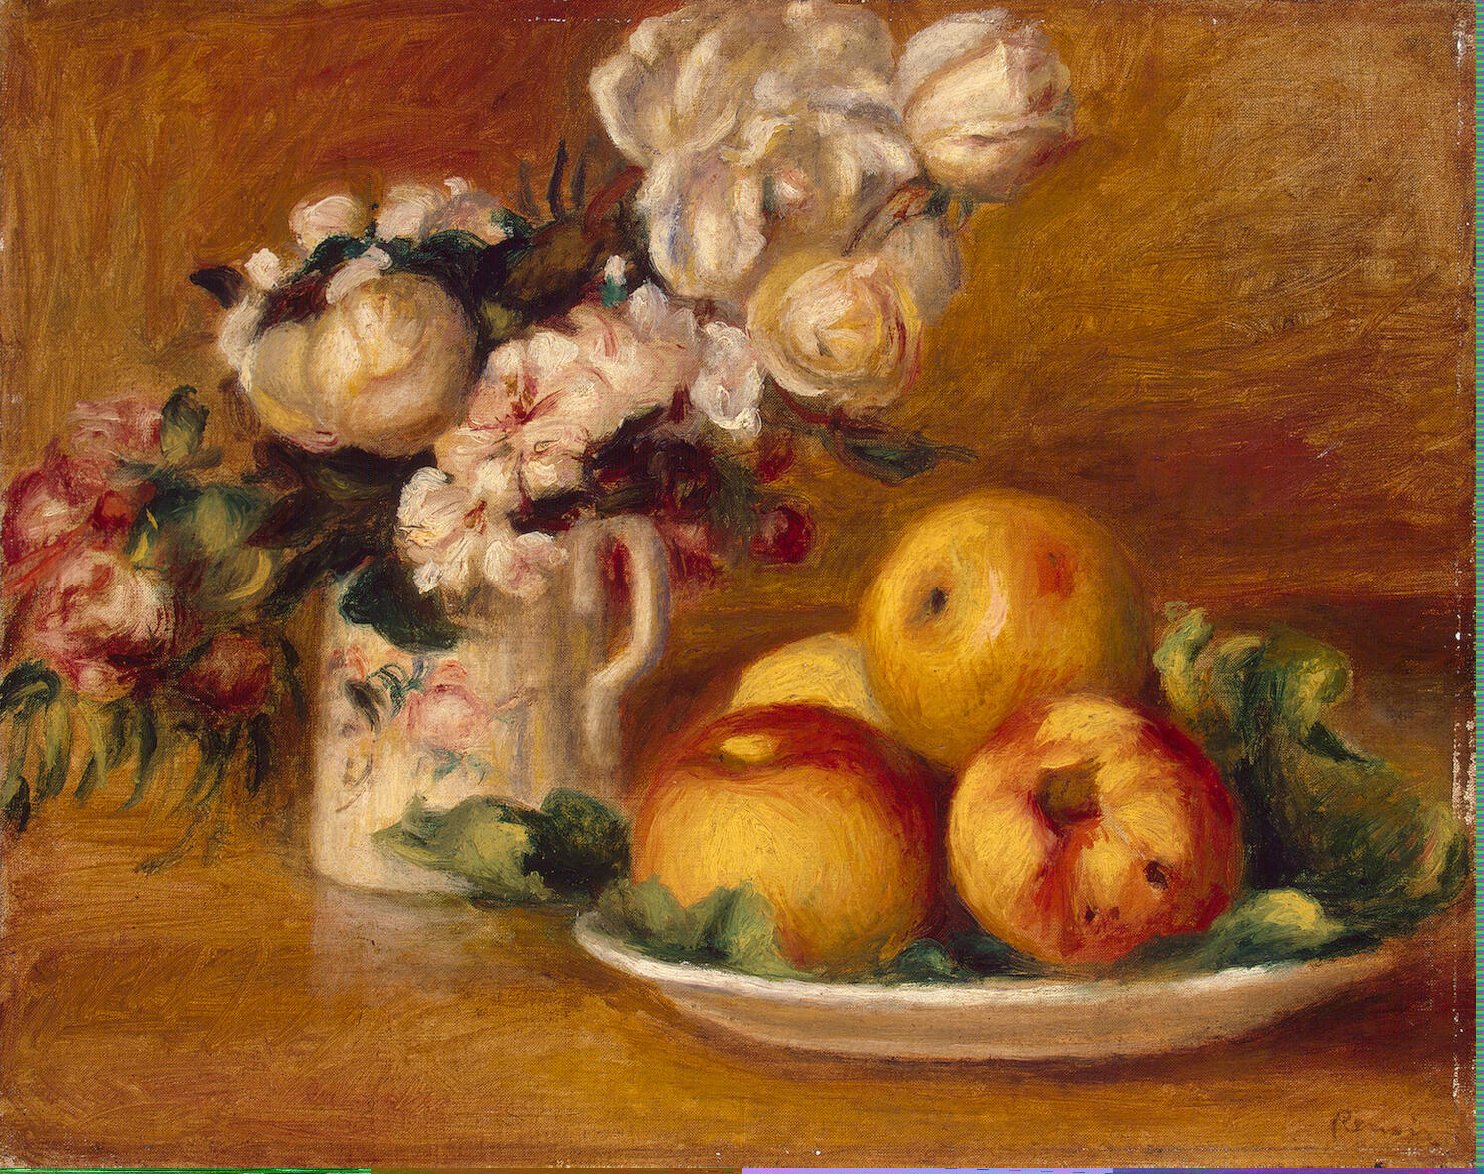 Pierre+Auguste+Renoir-1841-1-19 (155).jpg